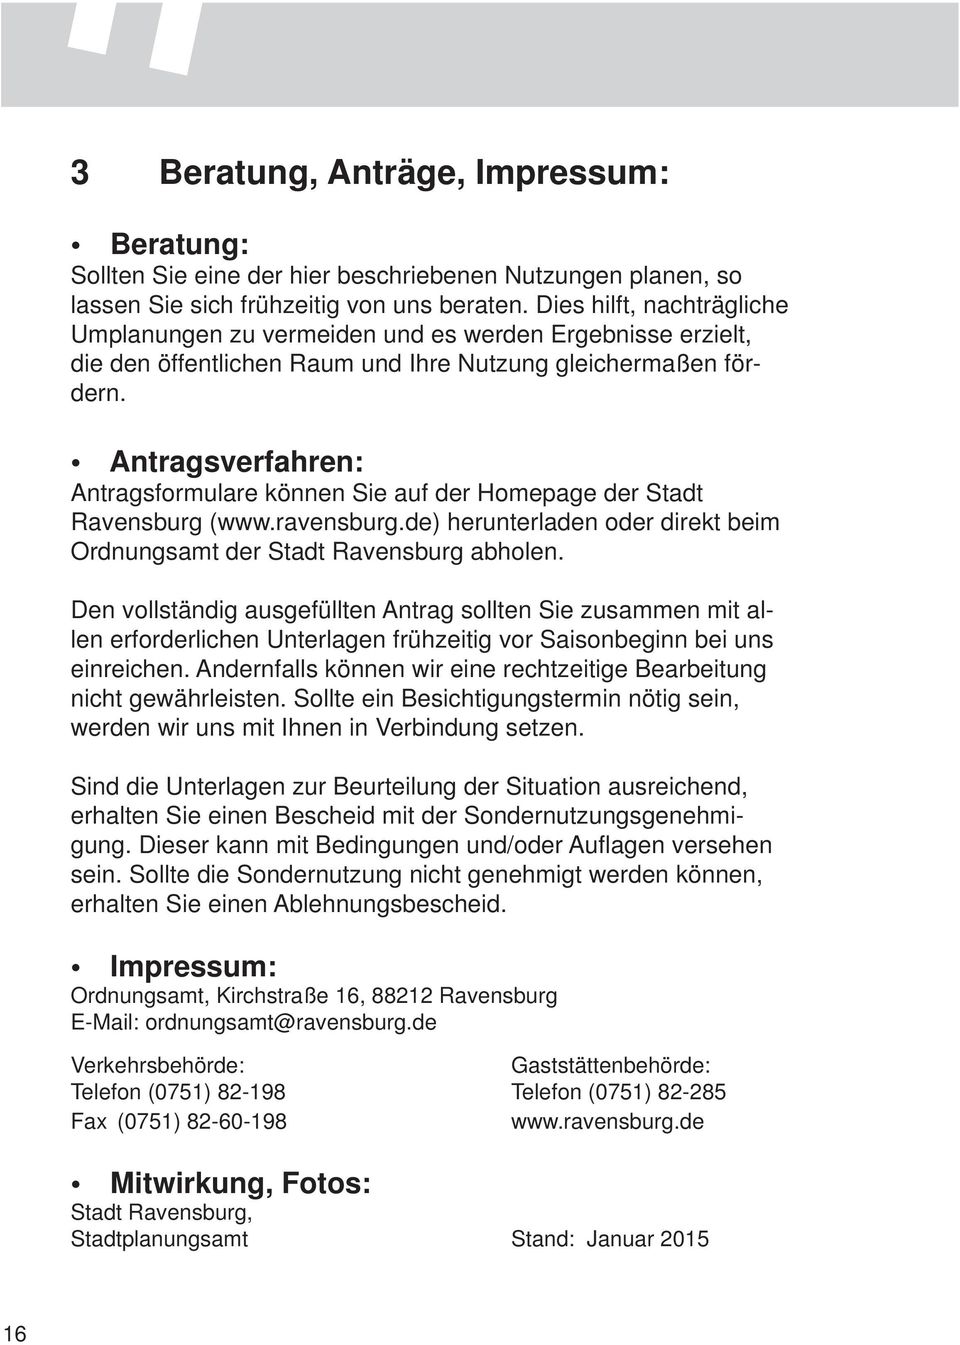 Antragsverfahren: Antragsformulare können Sie auf der Homepage der Stadt Ravensburg (www.ravensburg.de) herunterladen oder direkt beim Ordnungsamt der Stadt Ravensburg abholen.